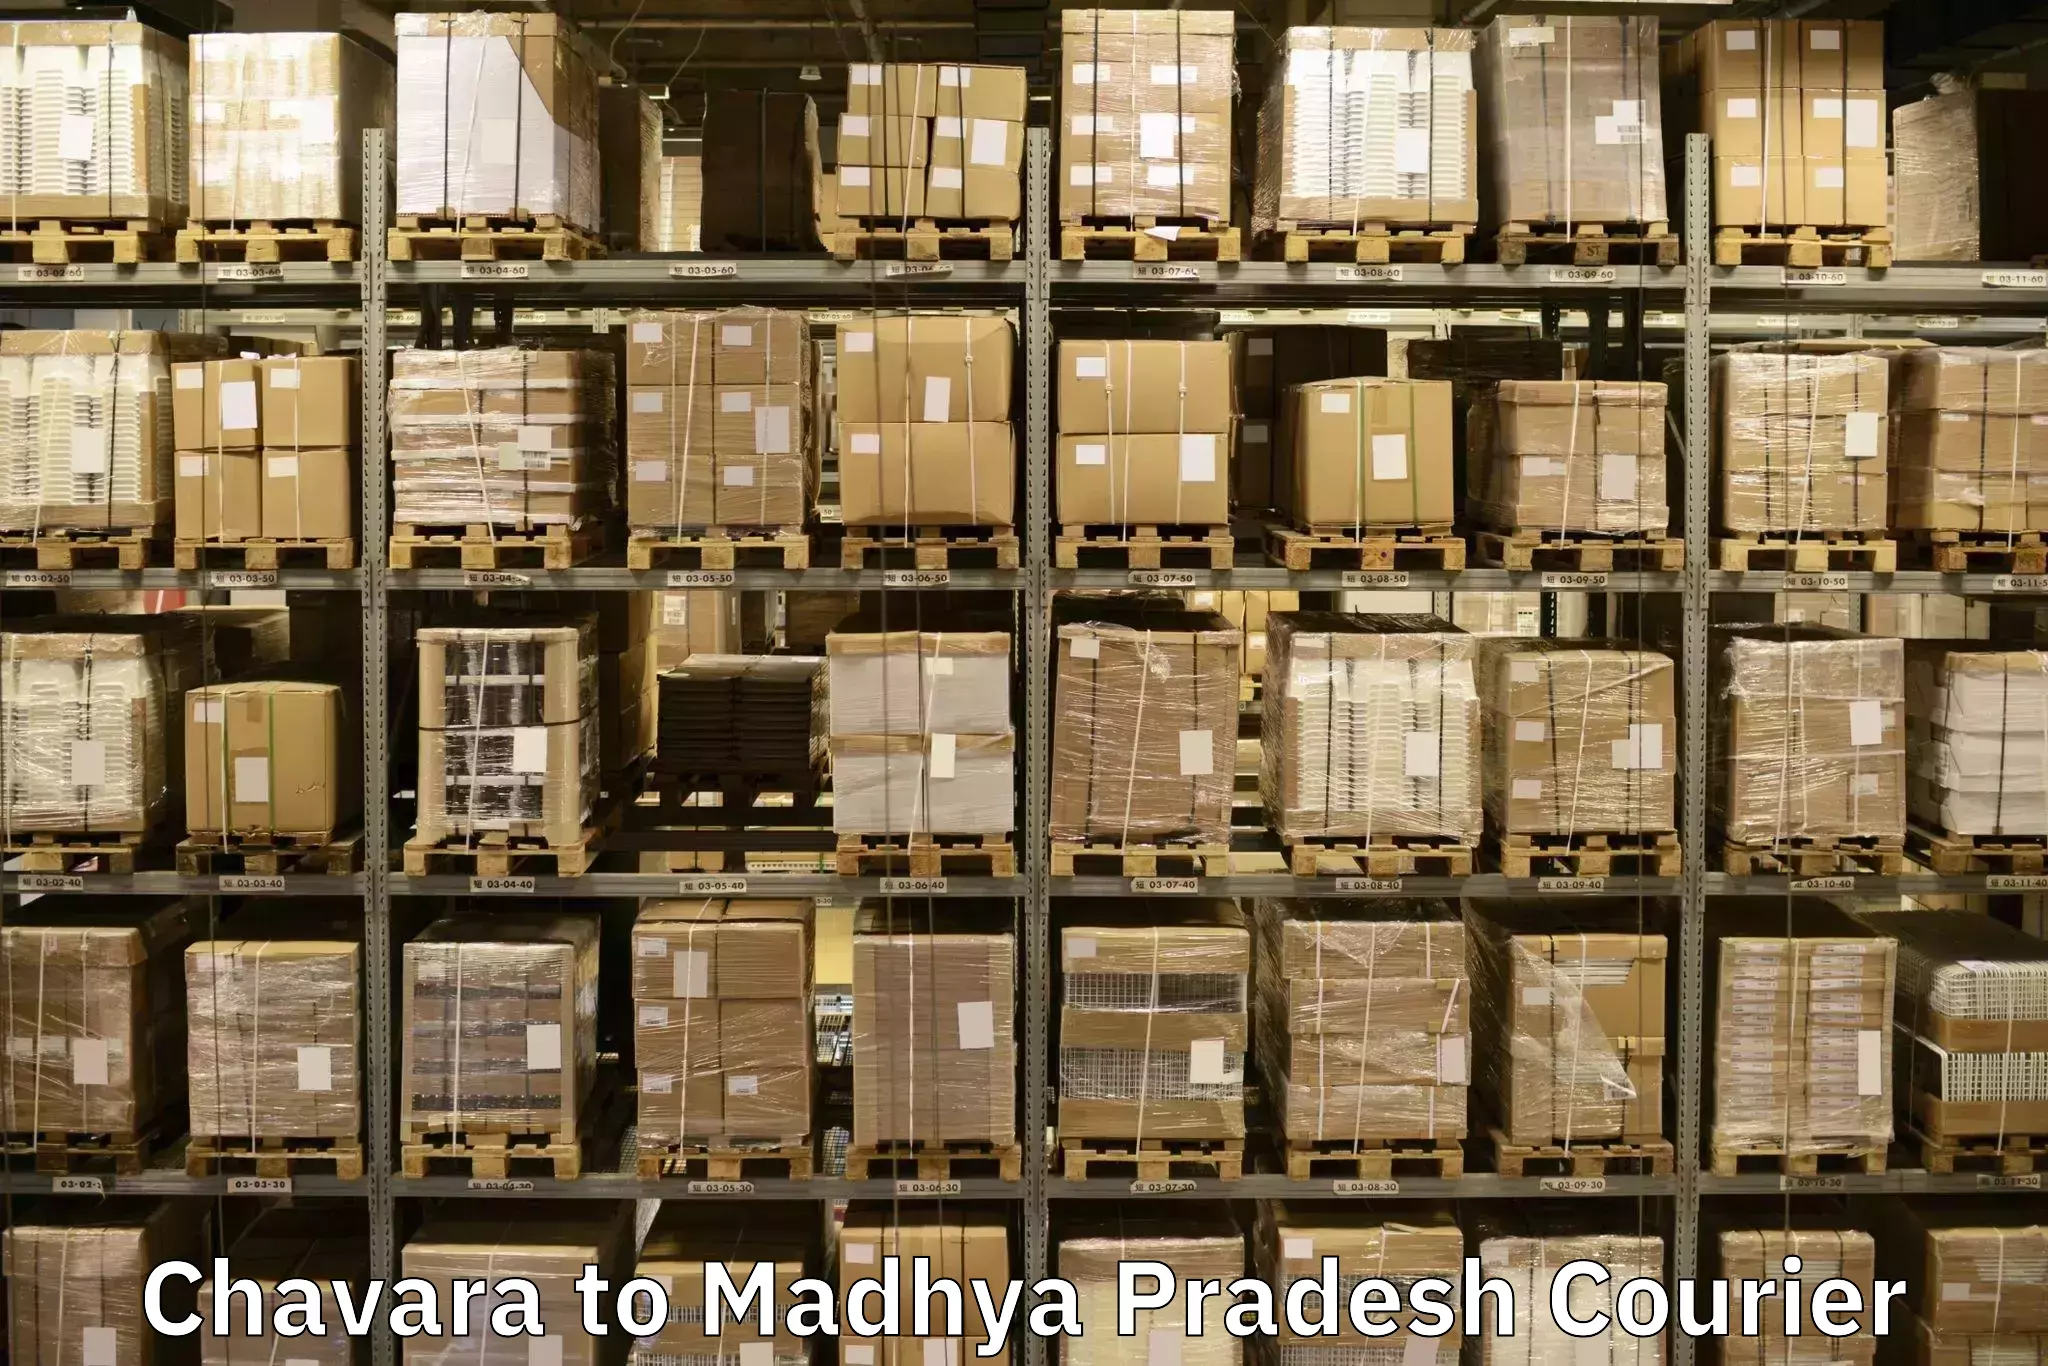 Professional movers and packers Chavara to Madhya Pradesh